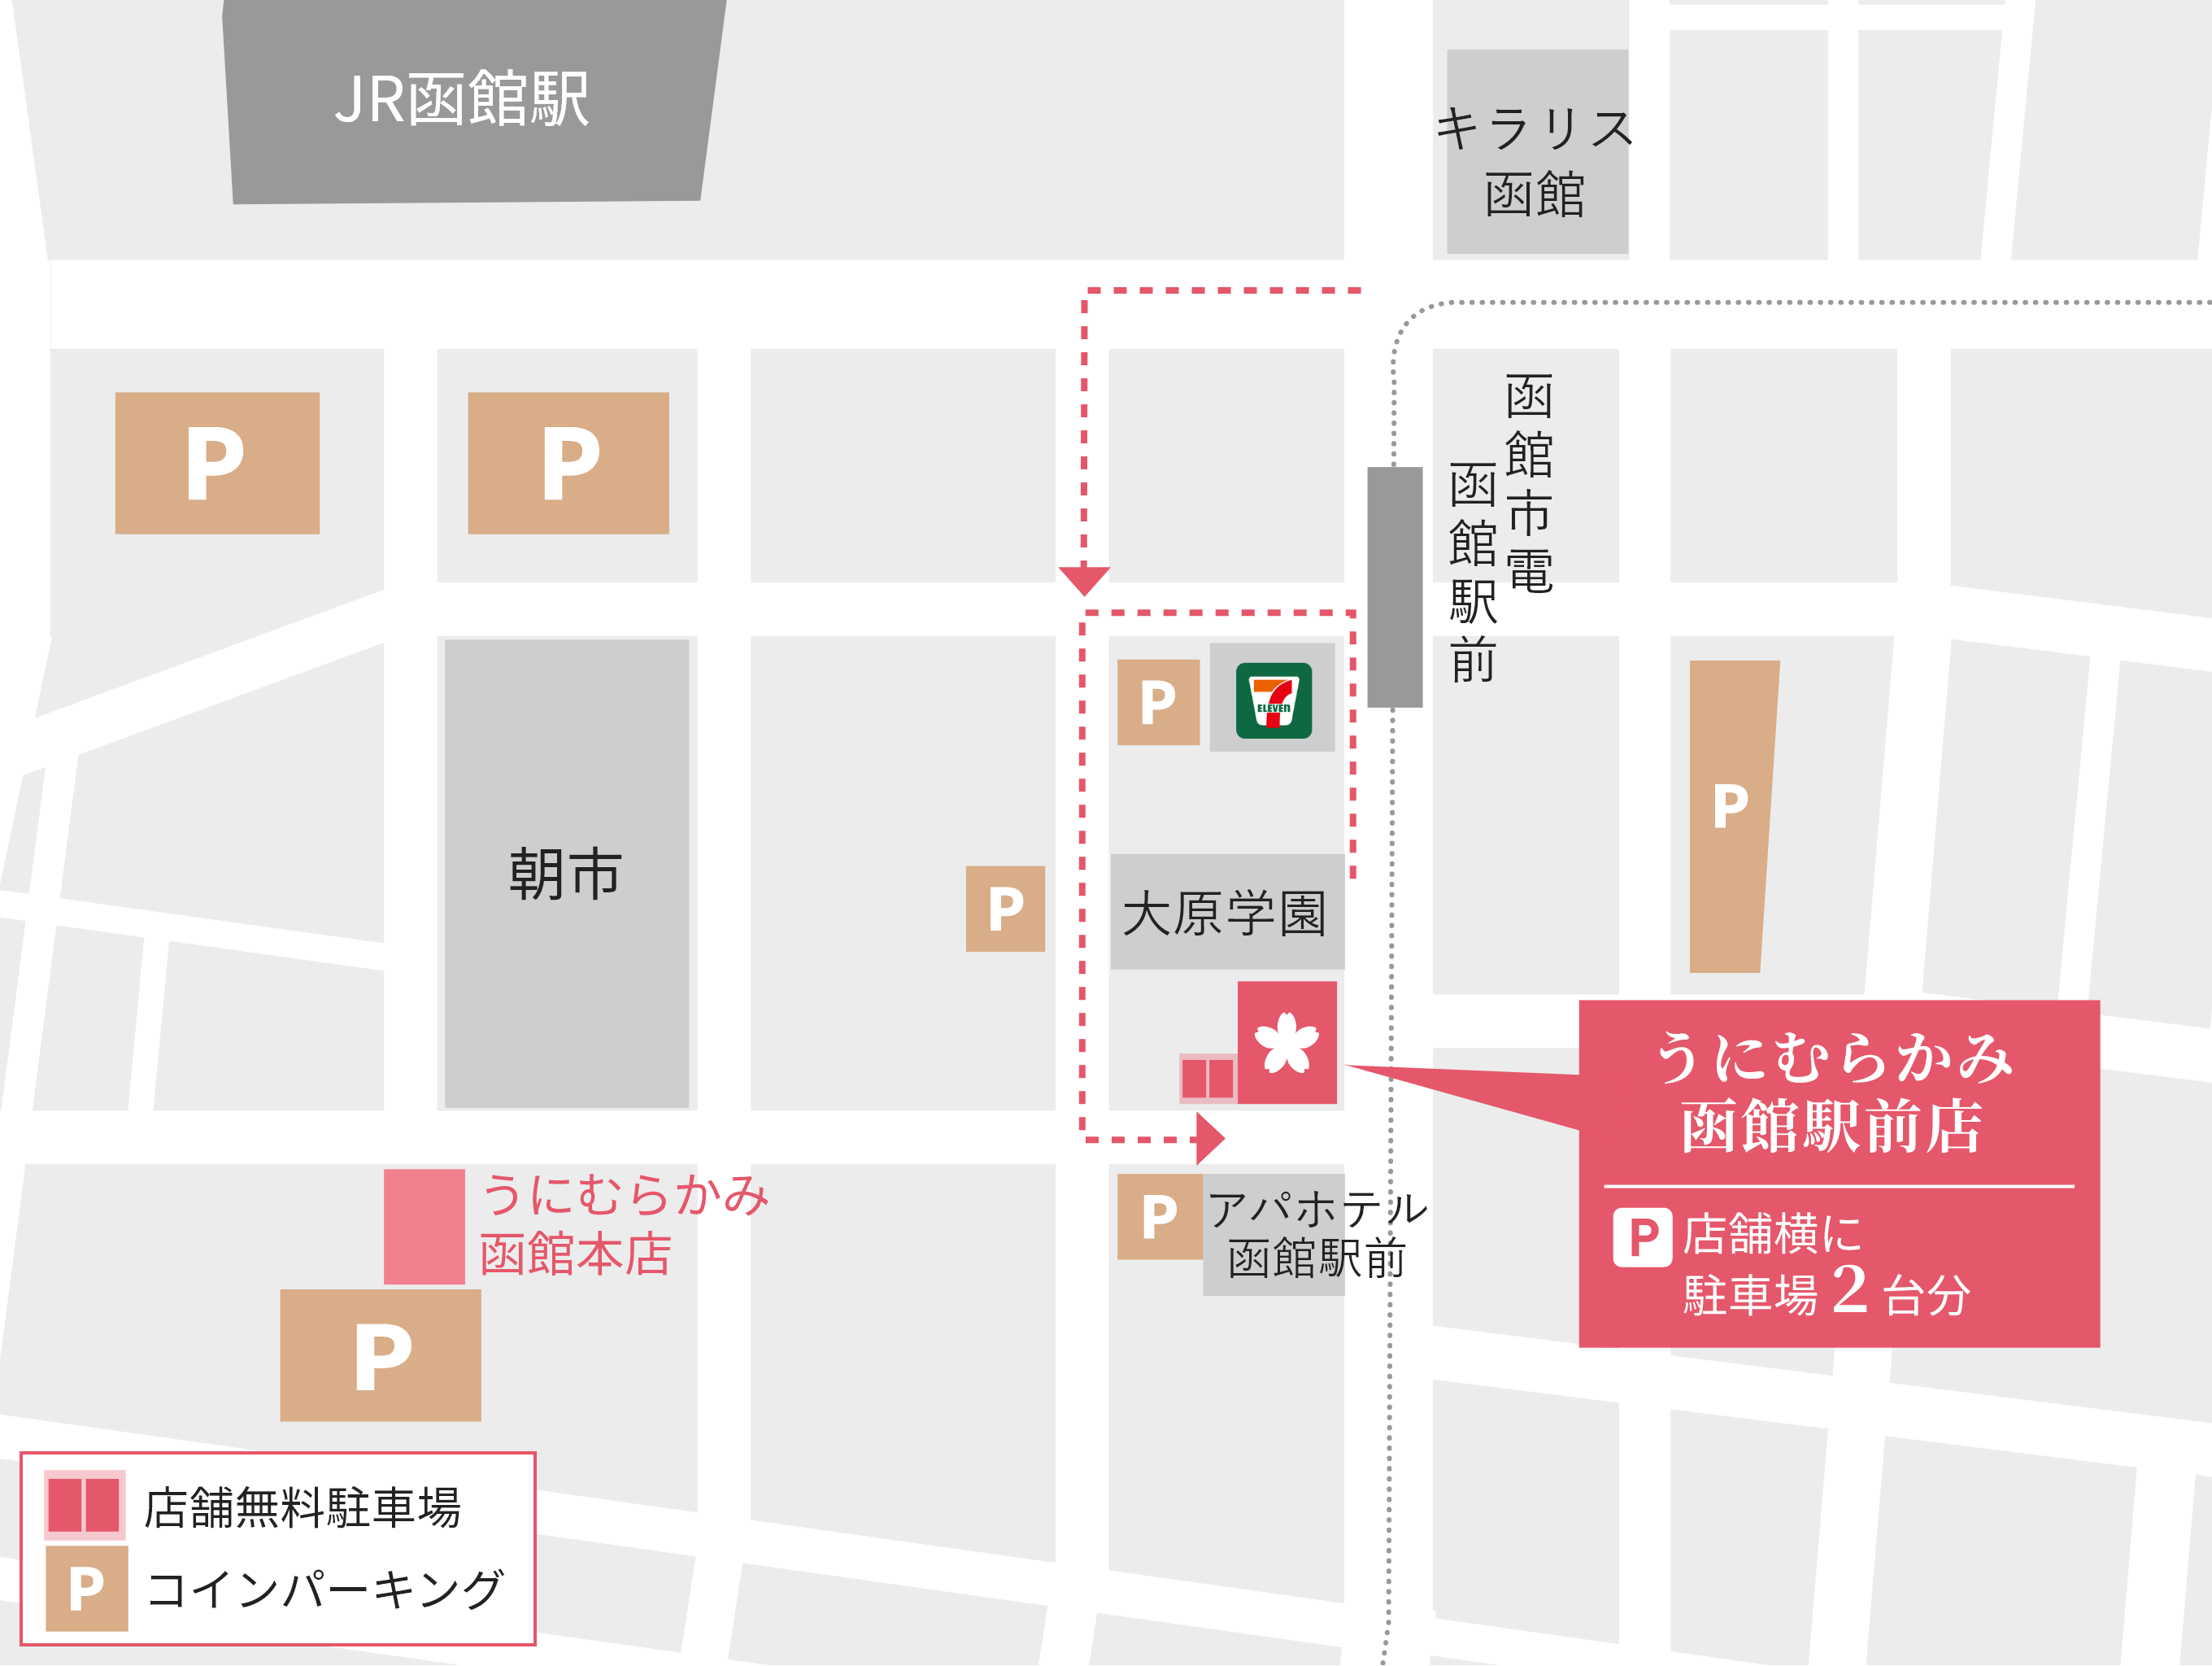 「うに むらかみ 函館駅前店」は、市電「函館駅前」で下車後、函館北洋ビル側の歩道に進むと、APAホテルと大原学園の間にございます。